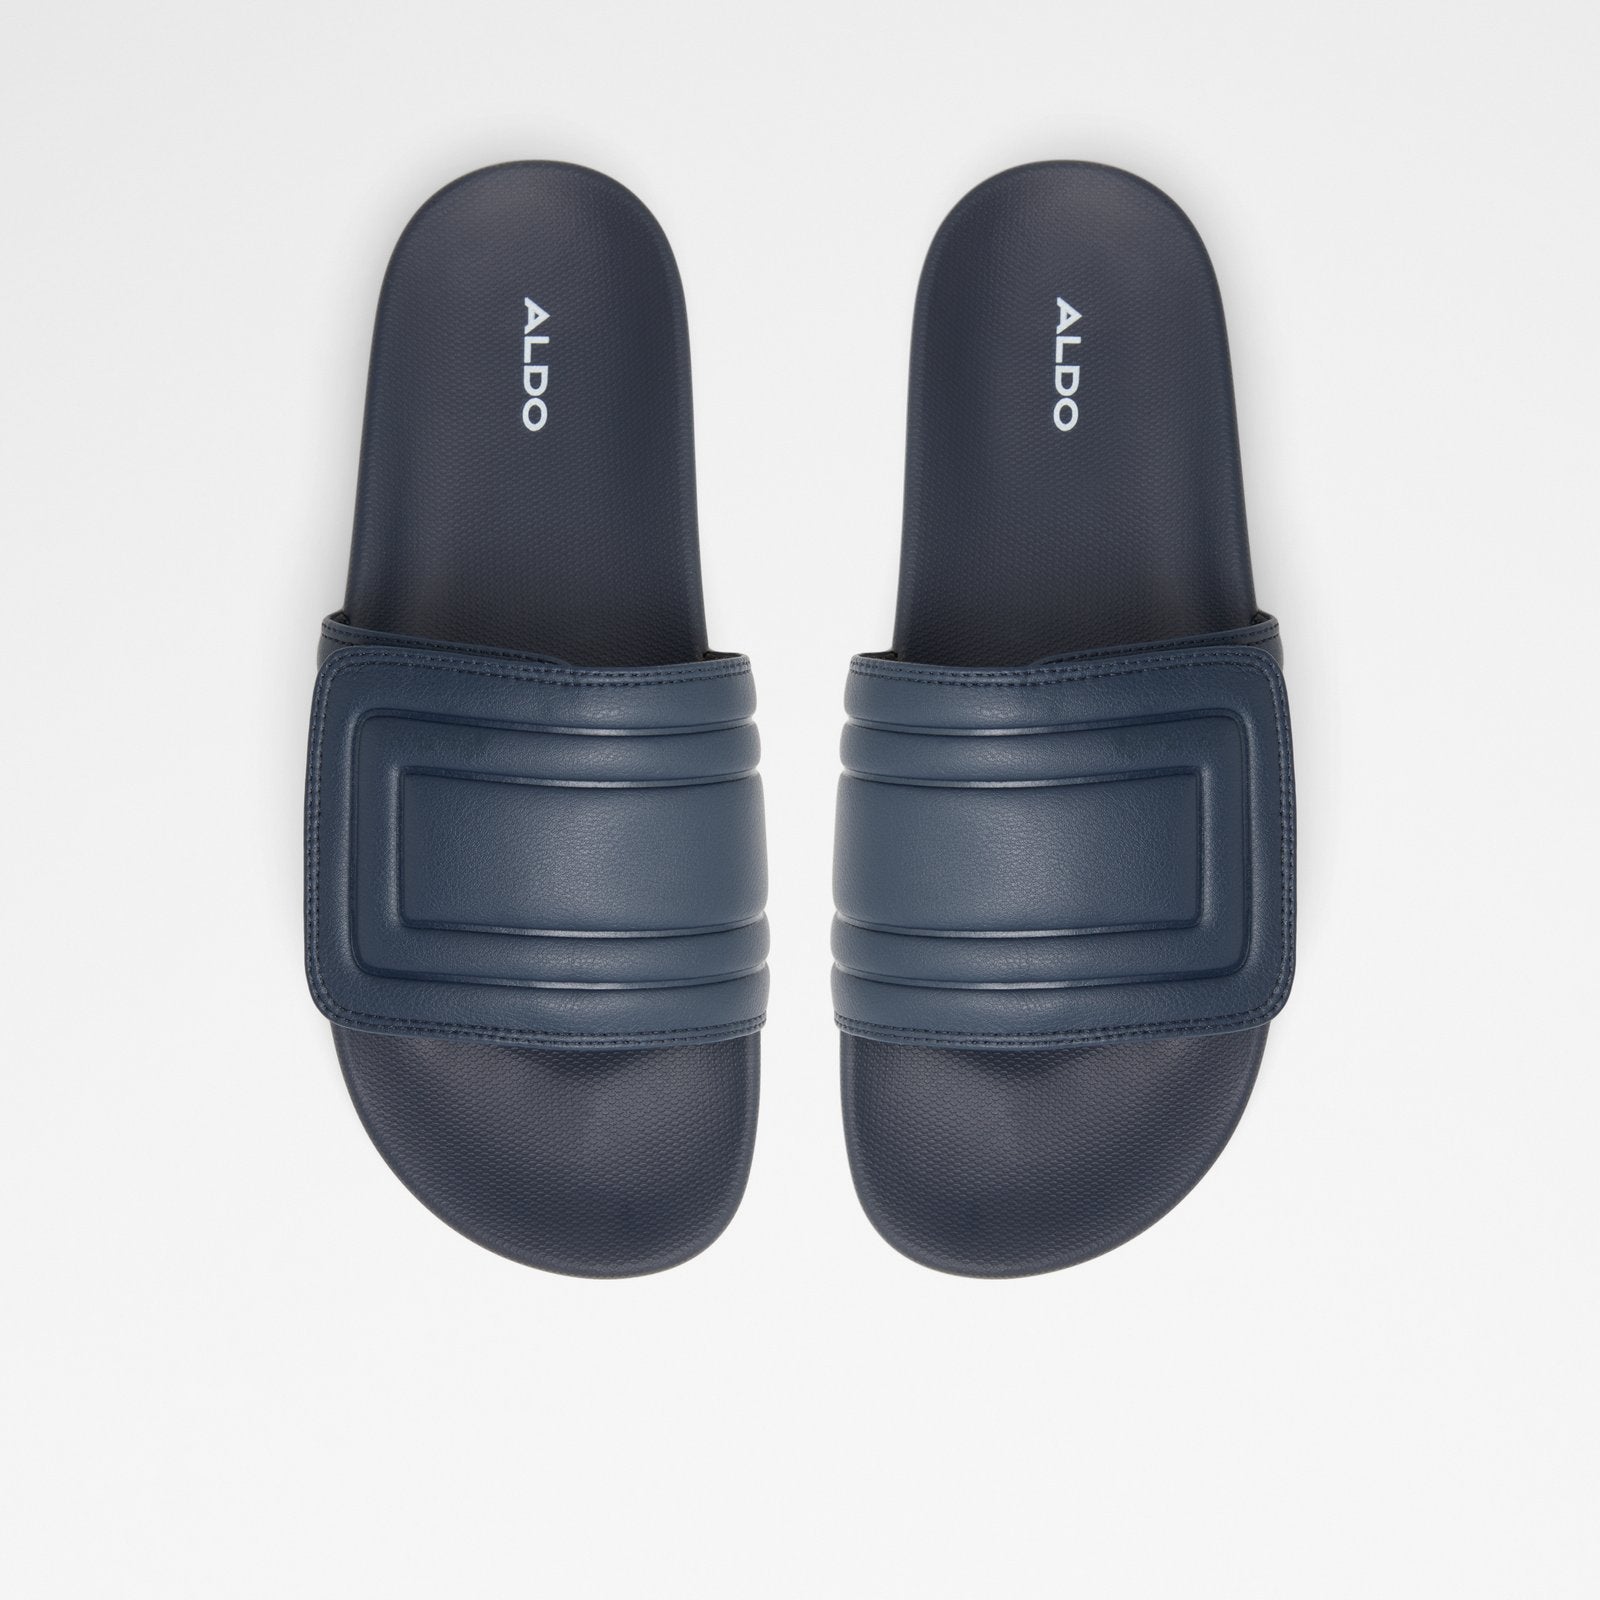 Burgas Men Shoes - Dark Blue - ALDO KSA